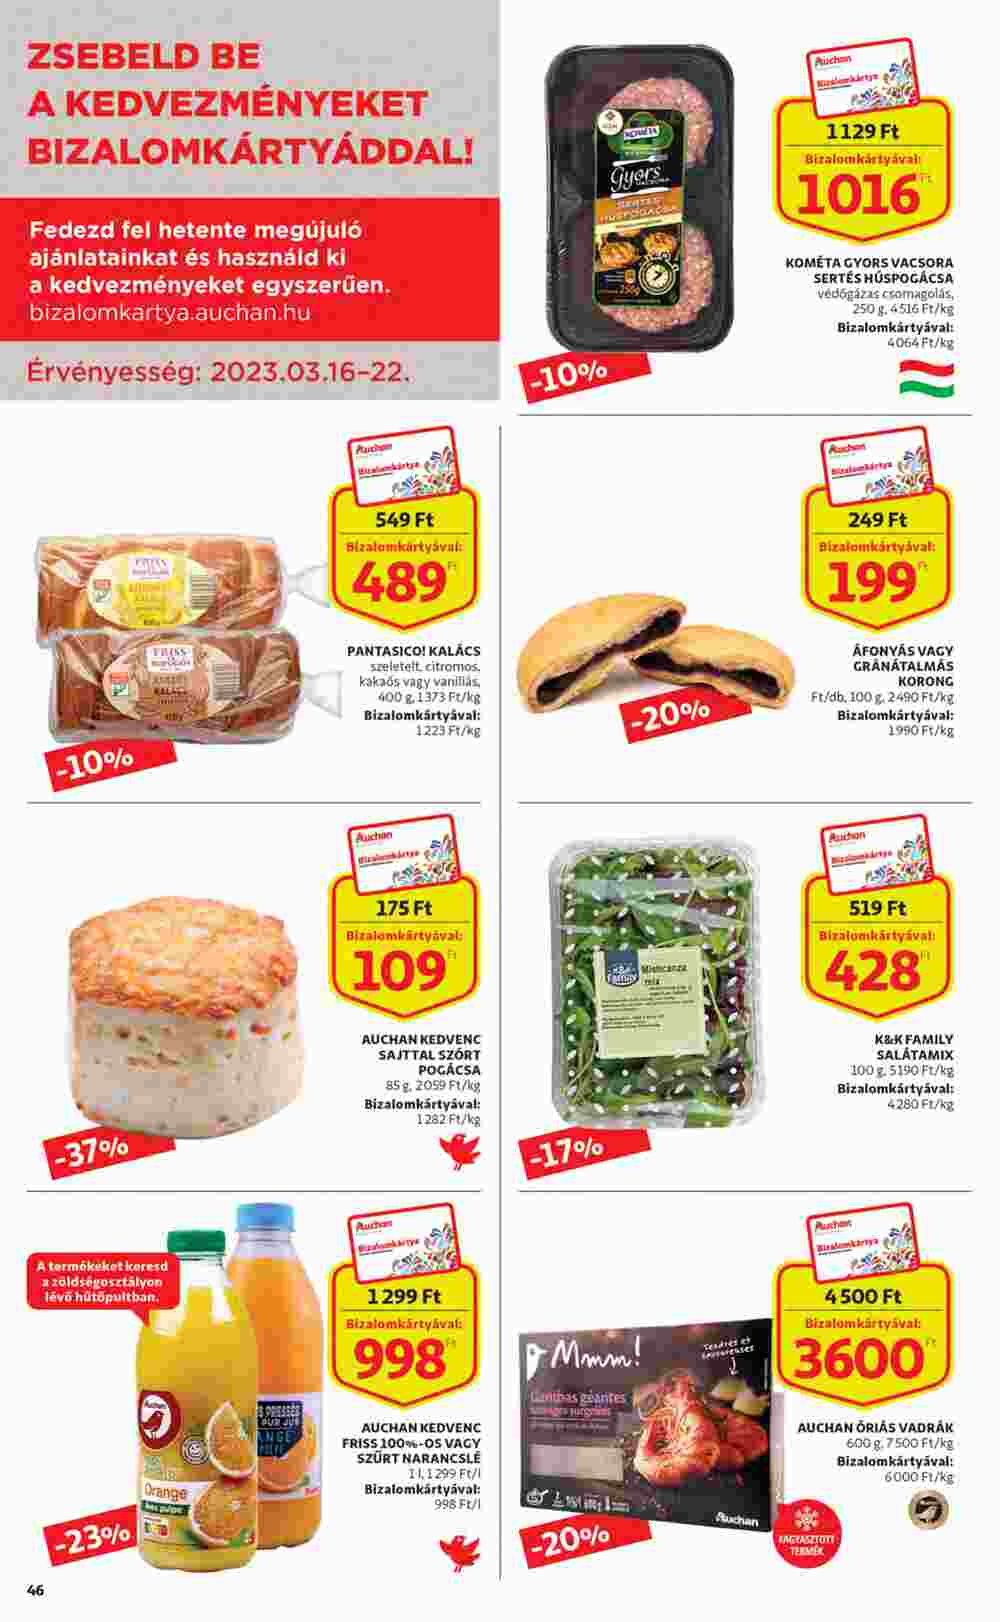 Auchan akciós újság 2023.03.16-tól - 46. oldal.